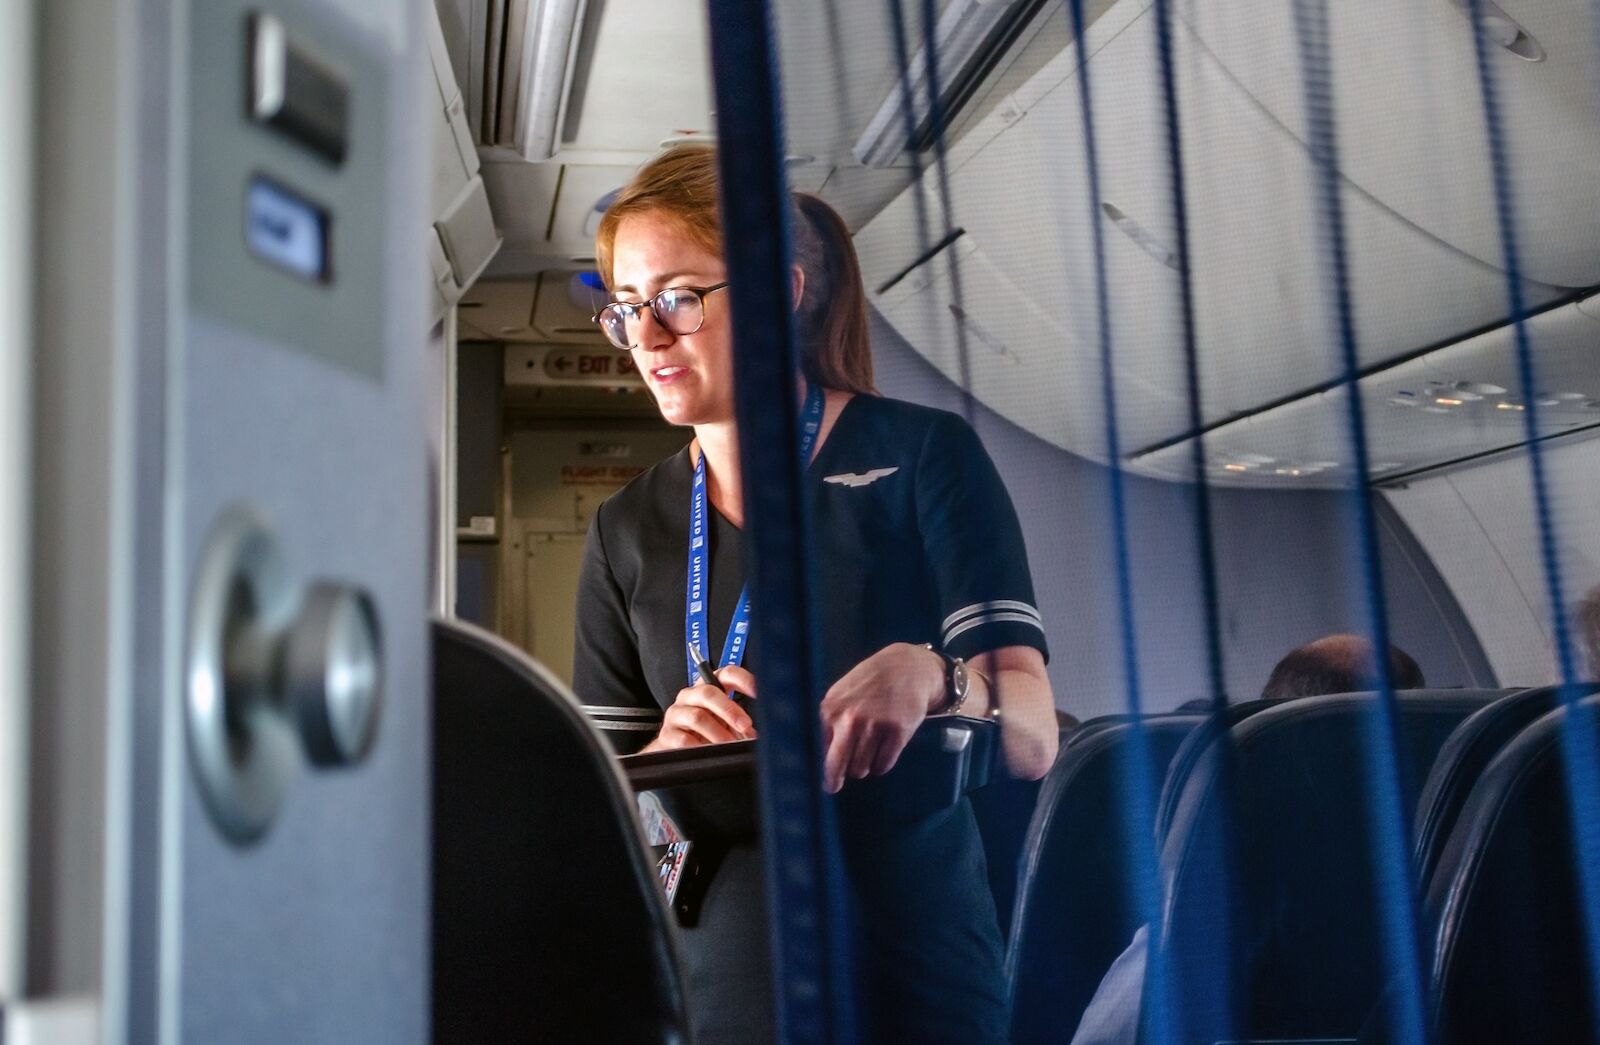 flight attendant helping passengers in business class